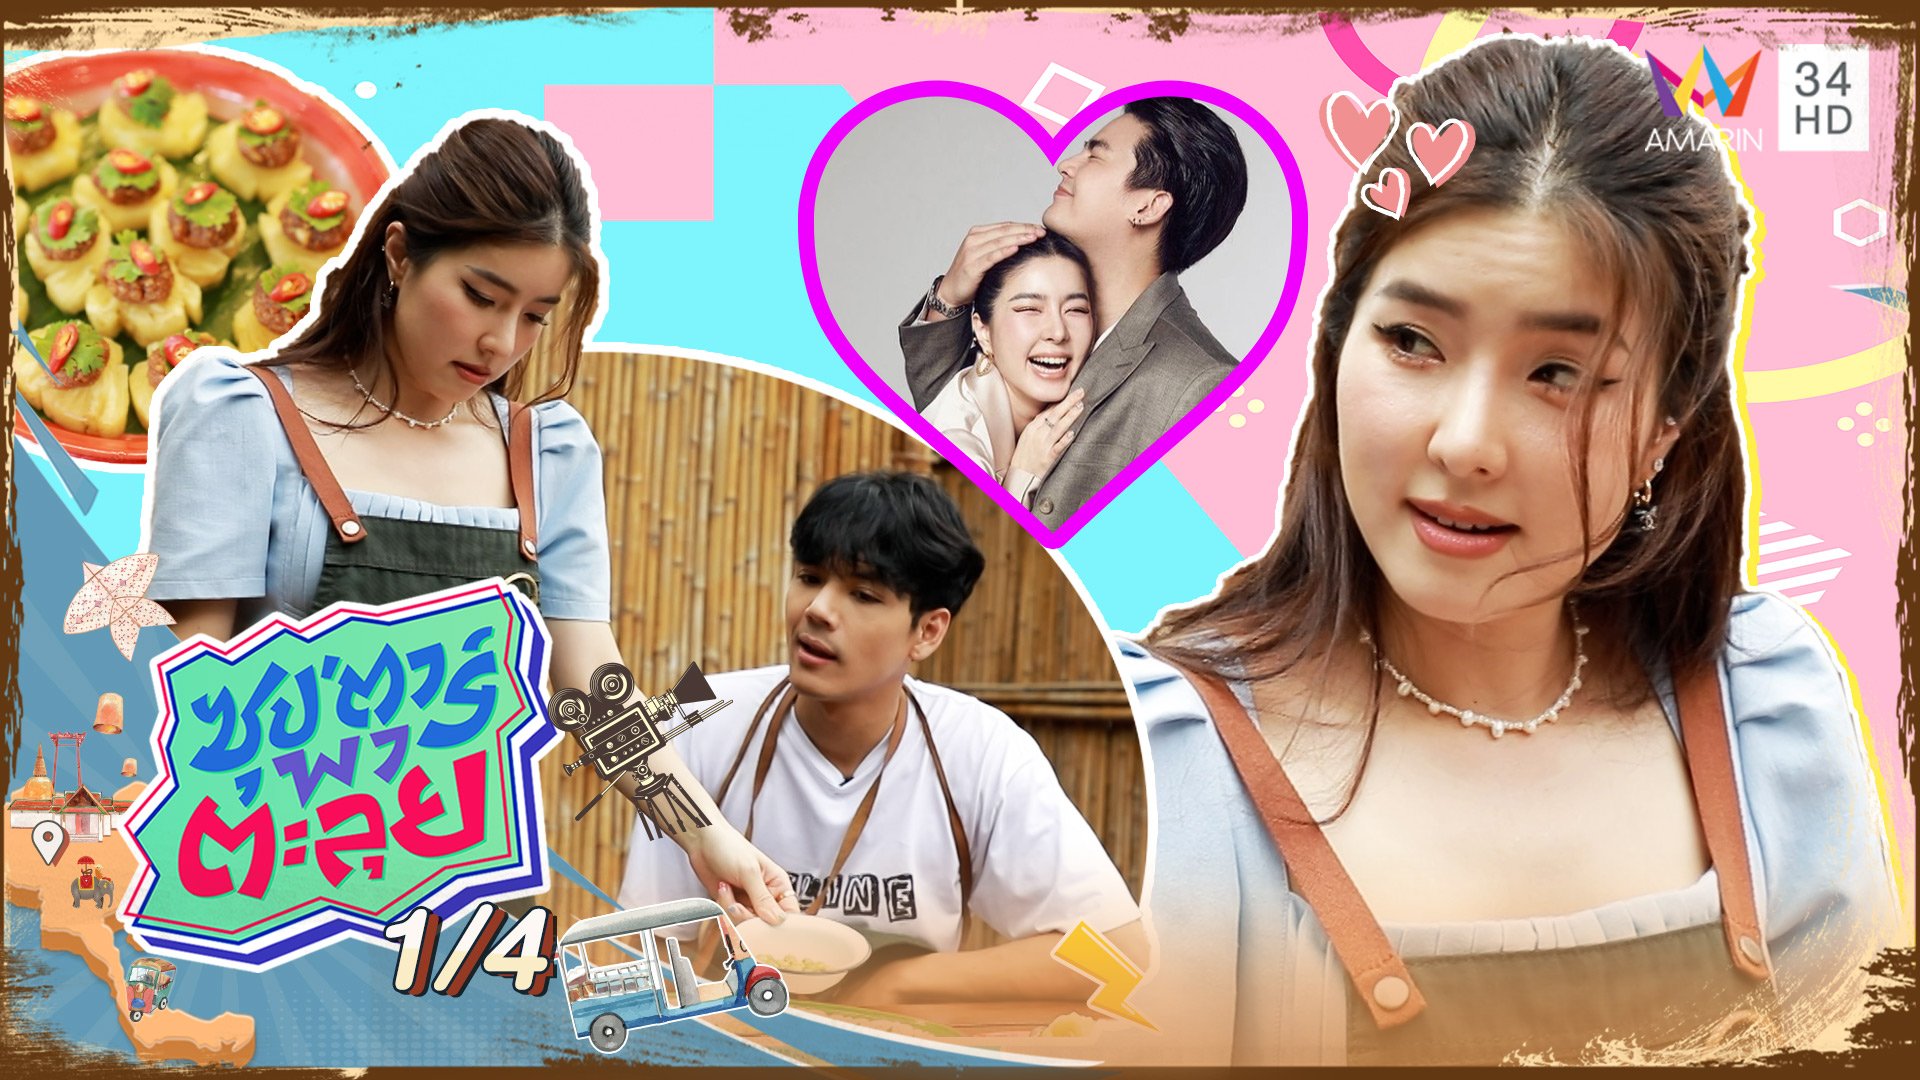 "จียอน" สาวเกาหลีหัวใจไทย โชว์เสน่ห์ปลายจวักมัดใจ "ฮั่น" | ซุปตาร์พาตะลุย | 25 ส.ค. 65 (1/4) | AMARIN TVHD34